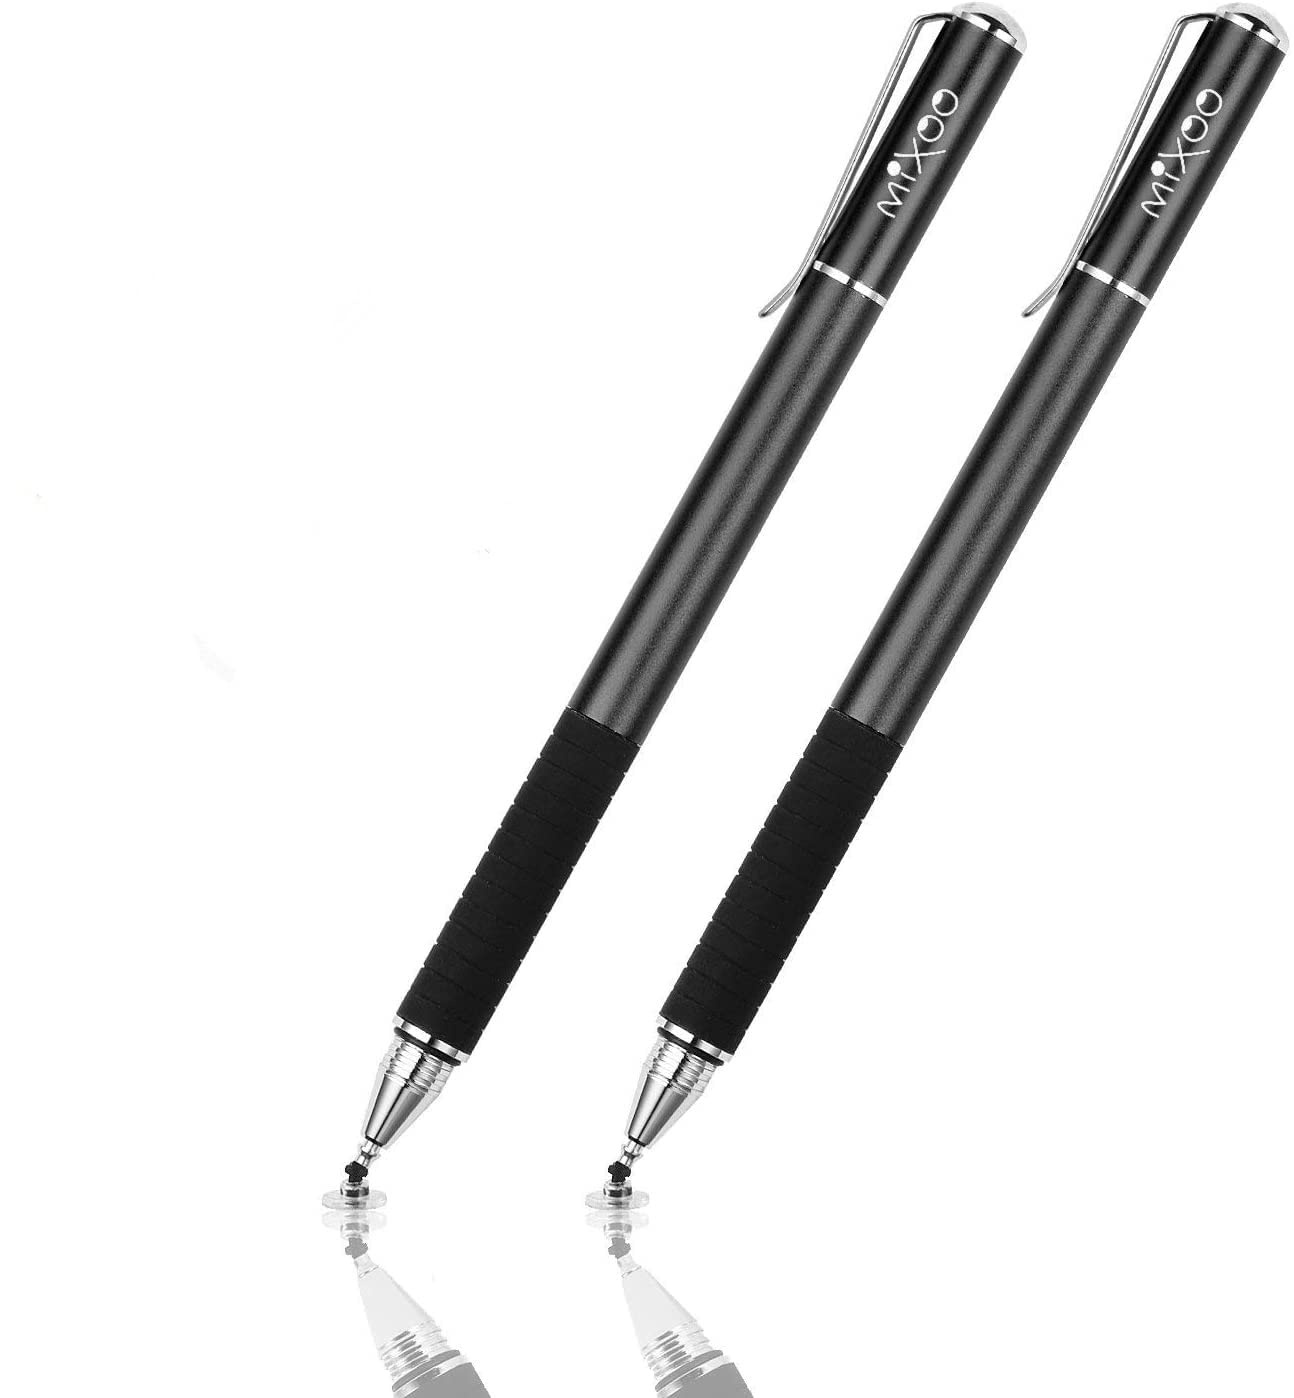 Mixoo Stift Präzision Disc Eingabestift Touchstift Stylus 2 in 1 Kapazitive Touchscreen Stift, kompatibel für Smartphones &Tablets (Schwarz + Schwarz)